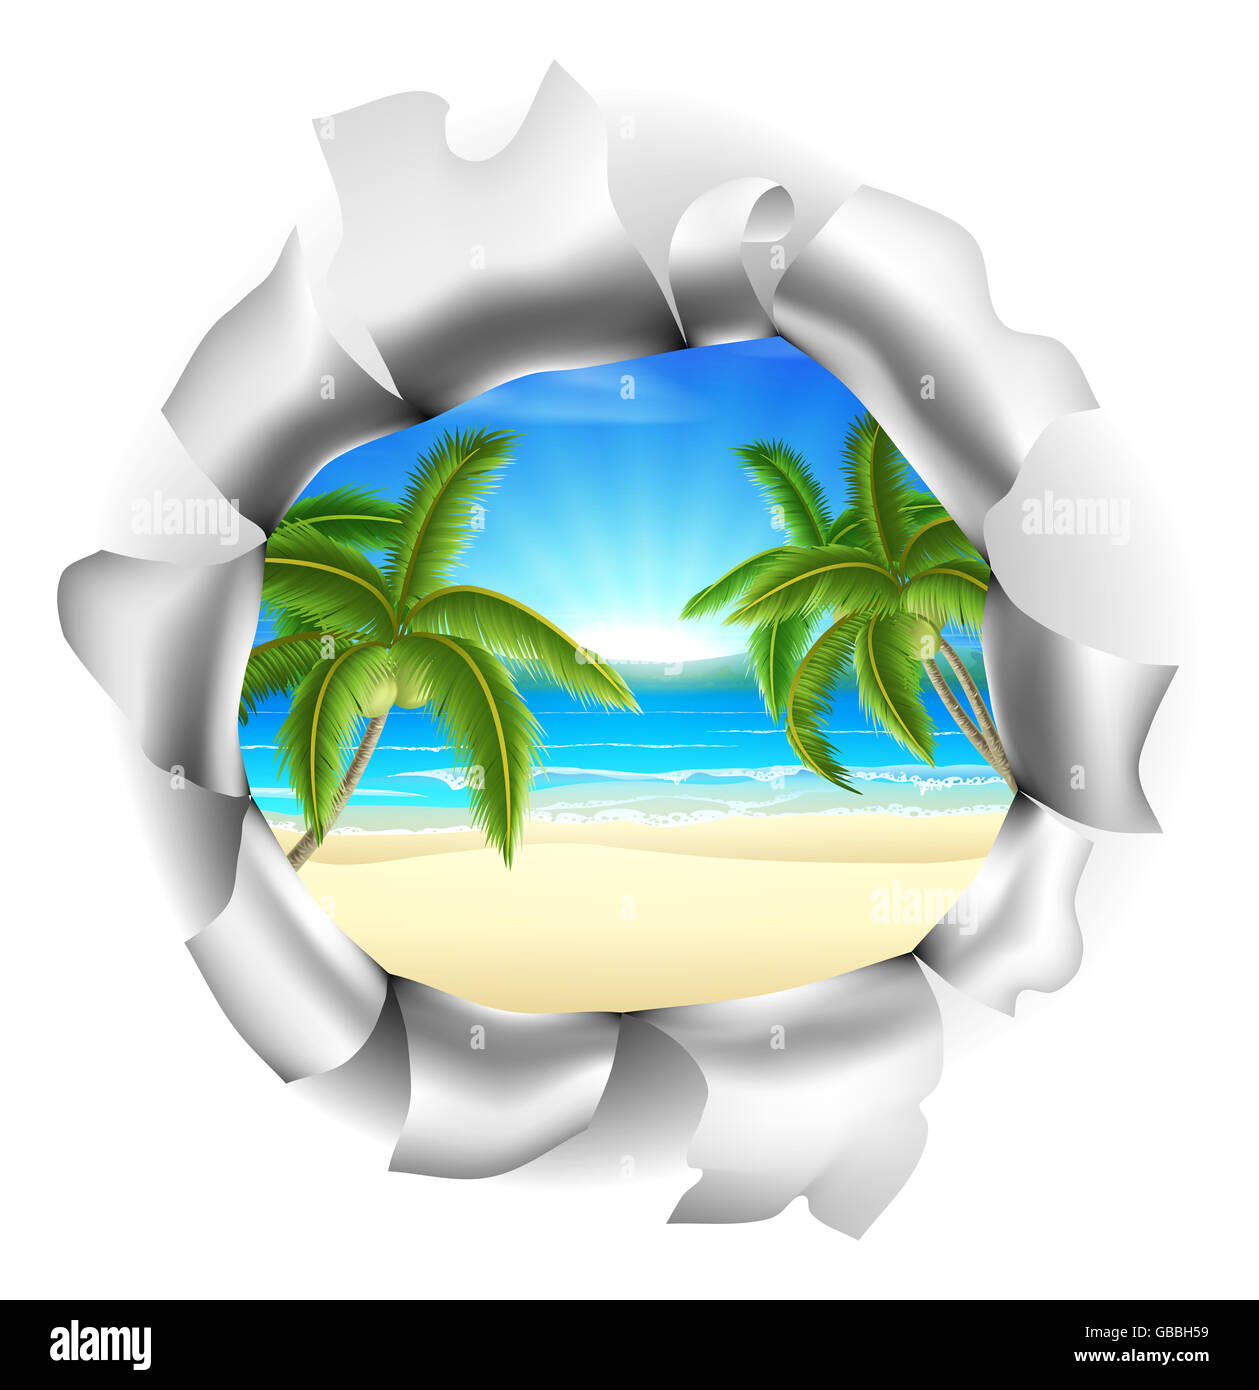 Una spiaggia tropicale con palme visibile attraverso un foro. Concetto di opportunità o un futuro positivo, o semplicemente la possibilità di vincere Foto Stock